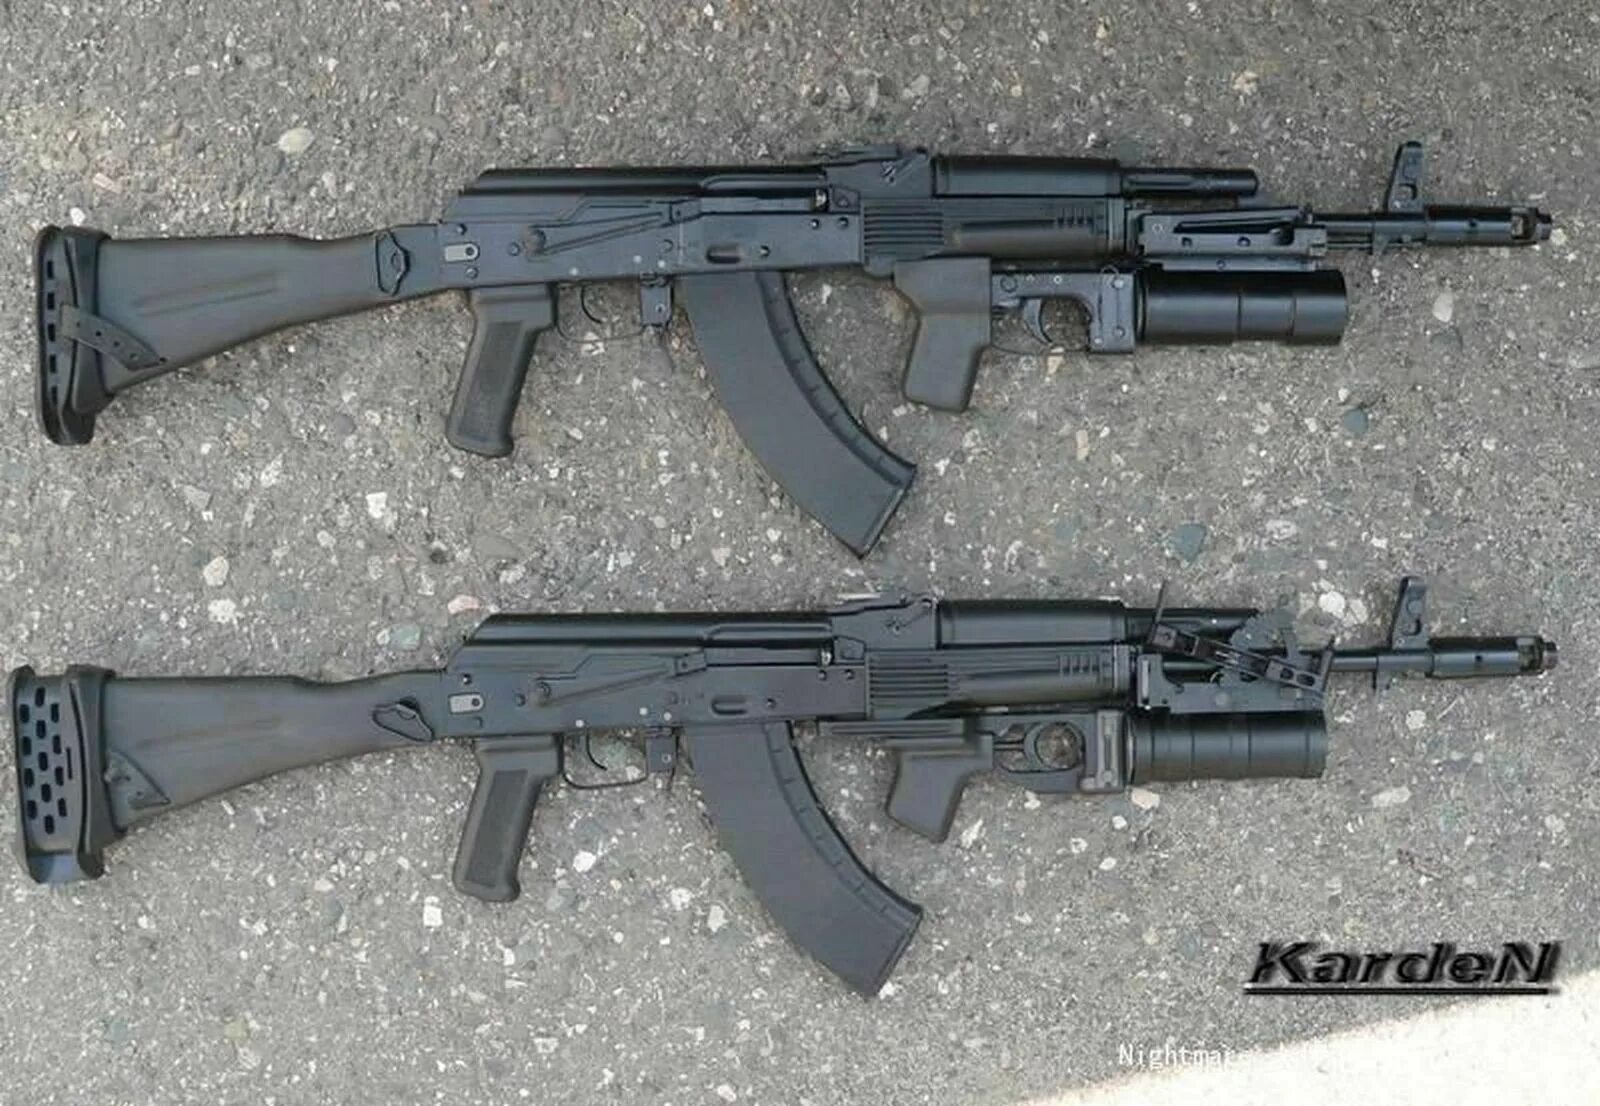 5 45 мм автомат. АК-103 автомат. АК-74м с подствольным гранатометом ГП-30. AK-103 автомат с ГП. АК-74м с ГП-30.